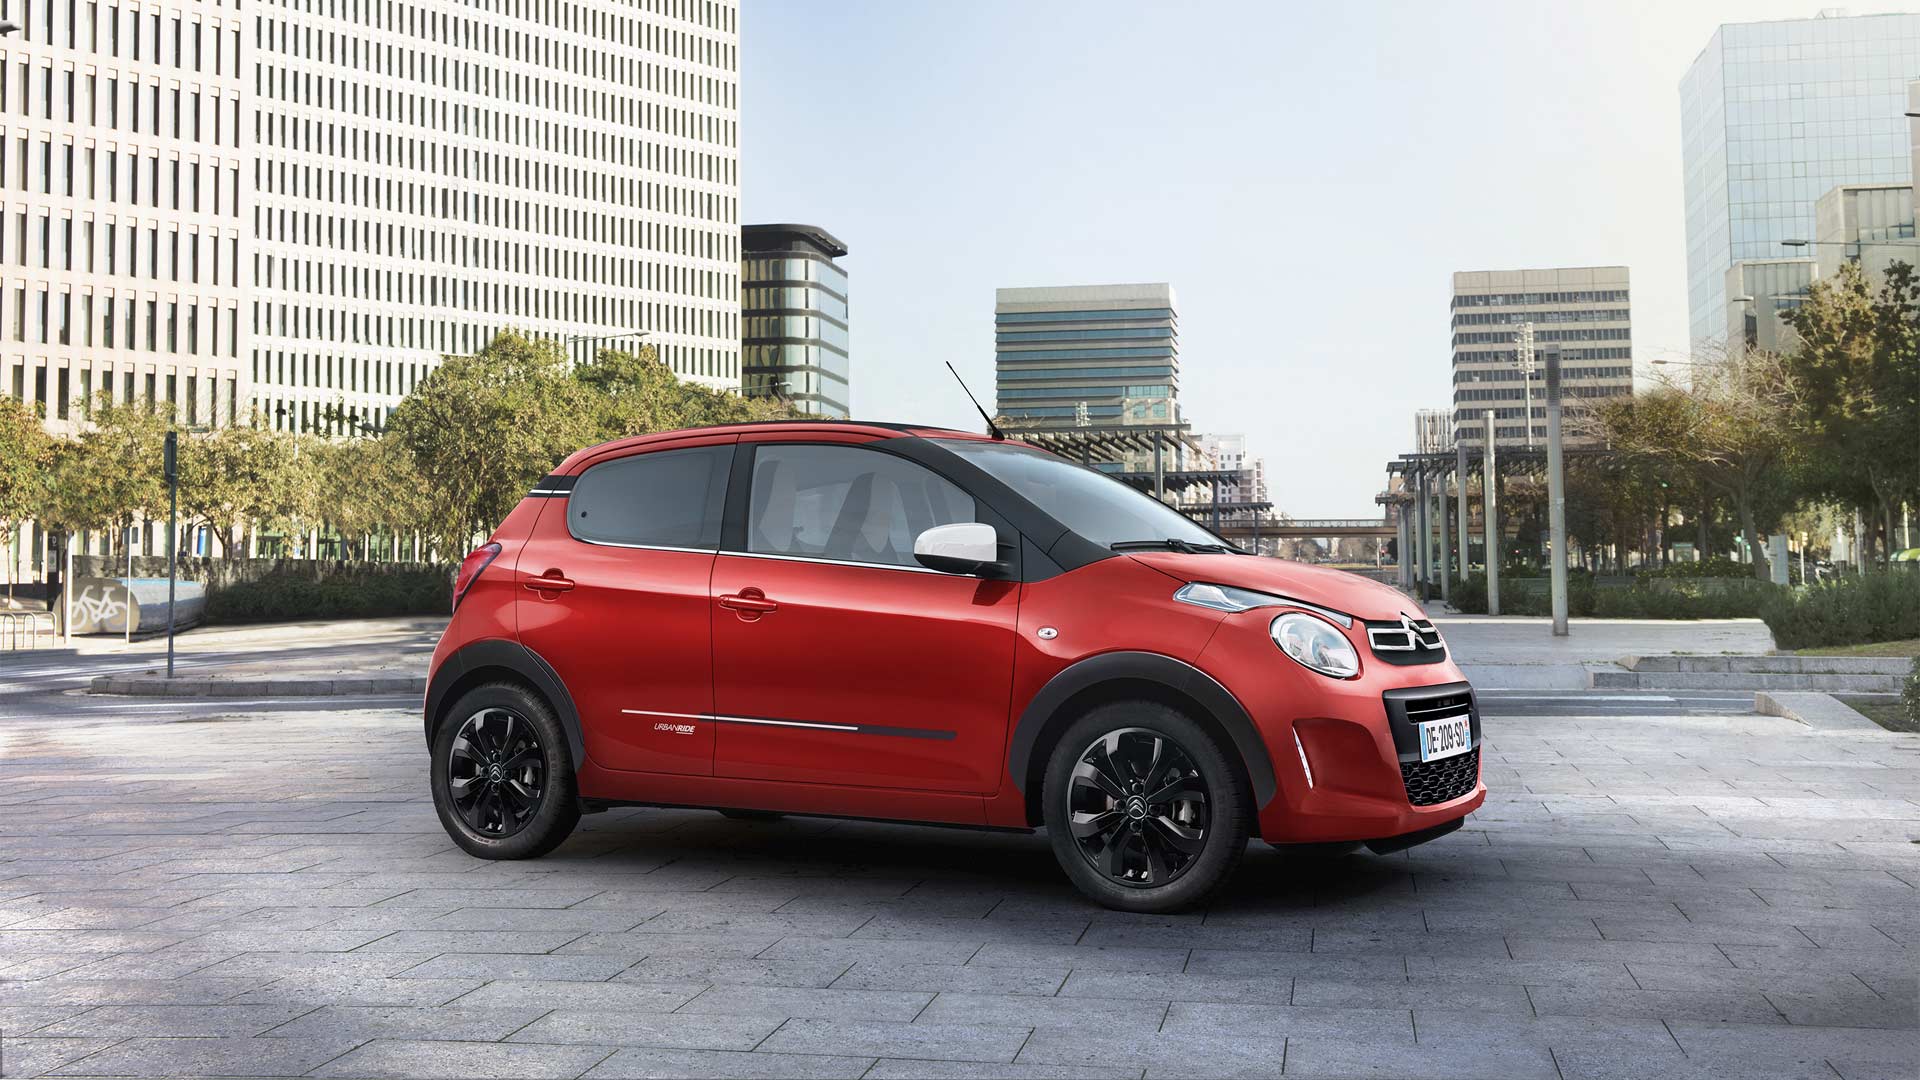 2019-Citroën-C1-Urban-Ride-Special-Edition